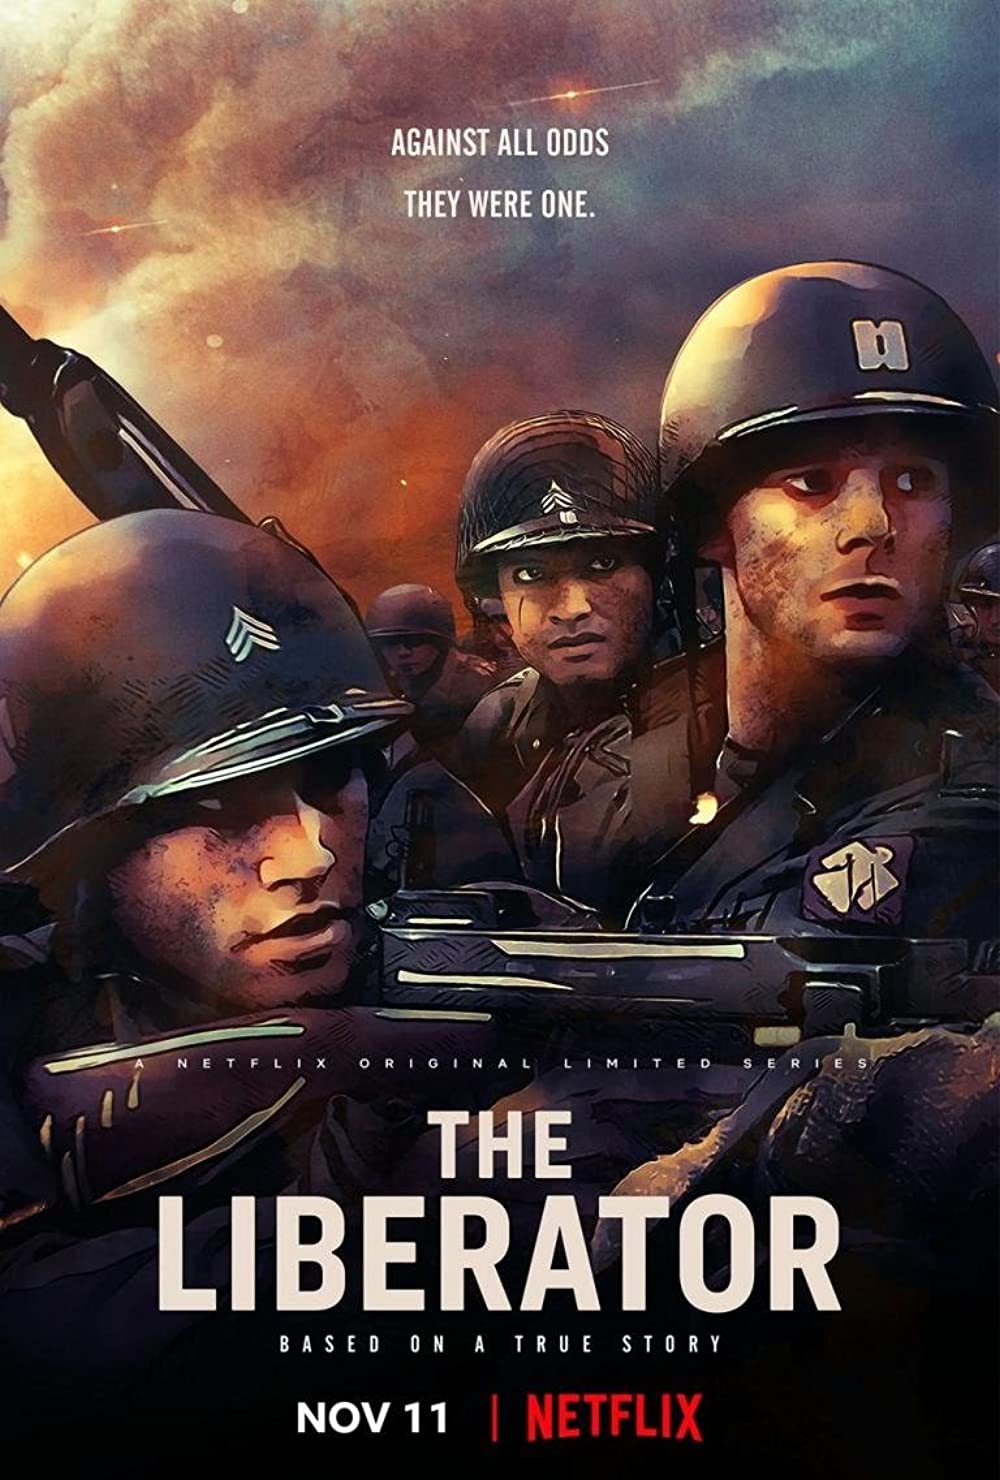 11 Film serial Netflix kisah kehidupan tentara, penuh suasana perang